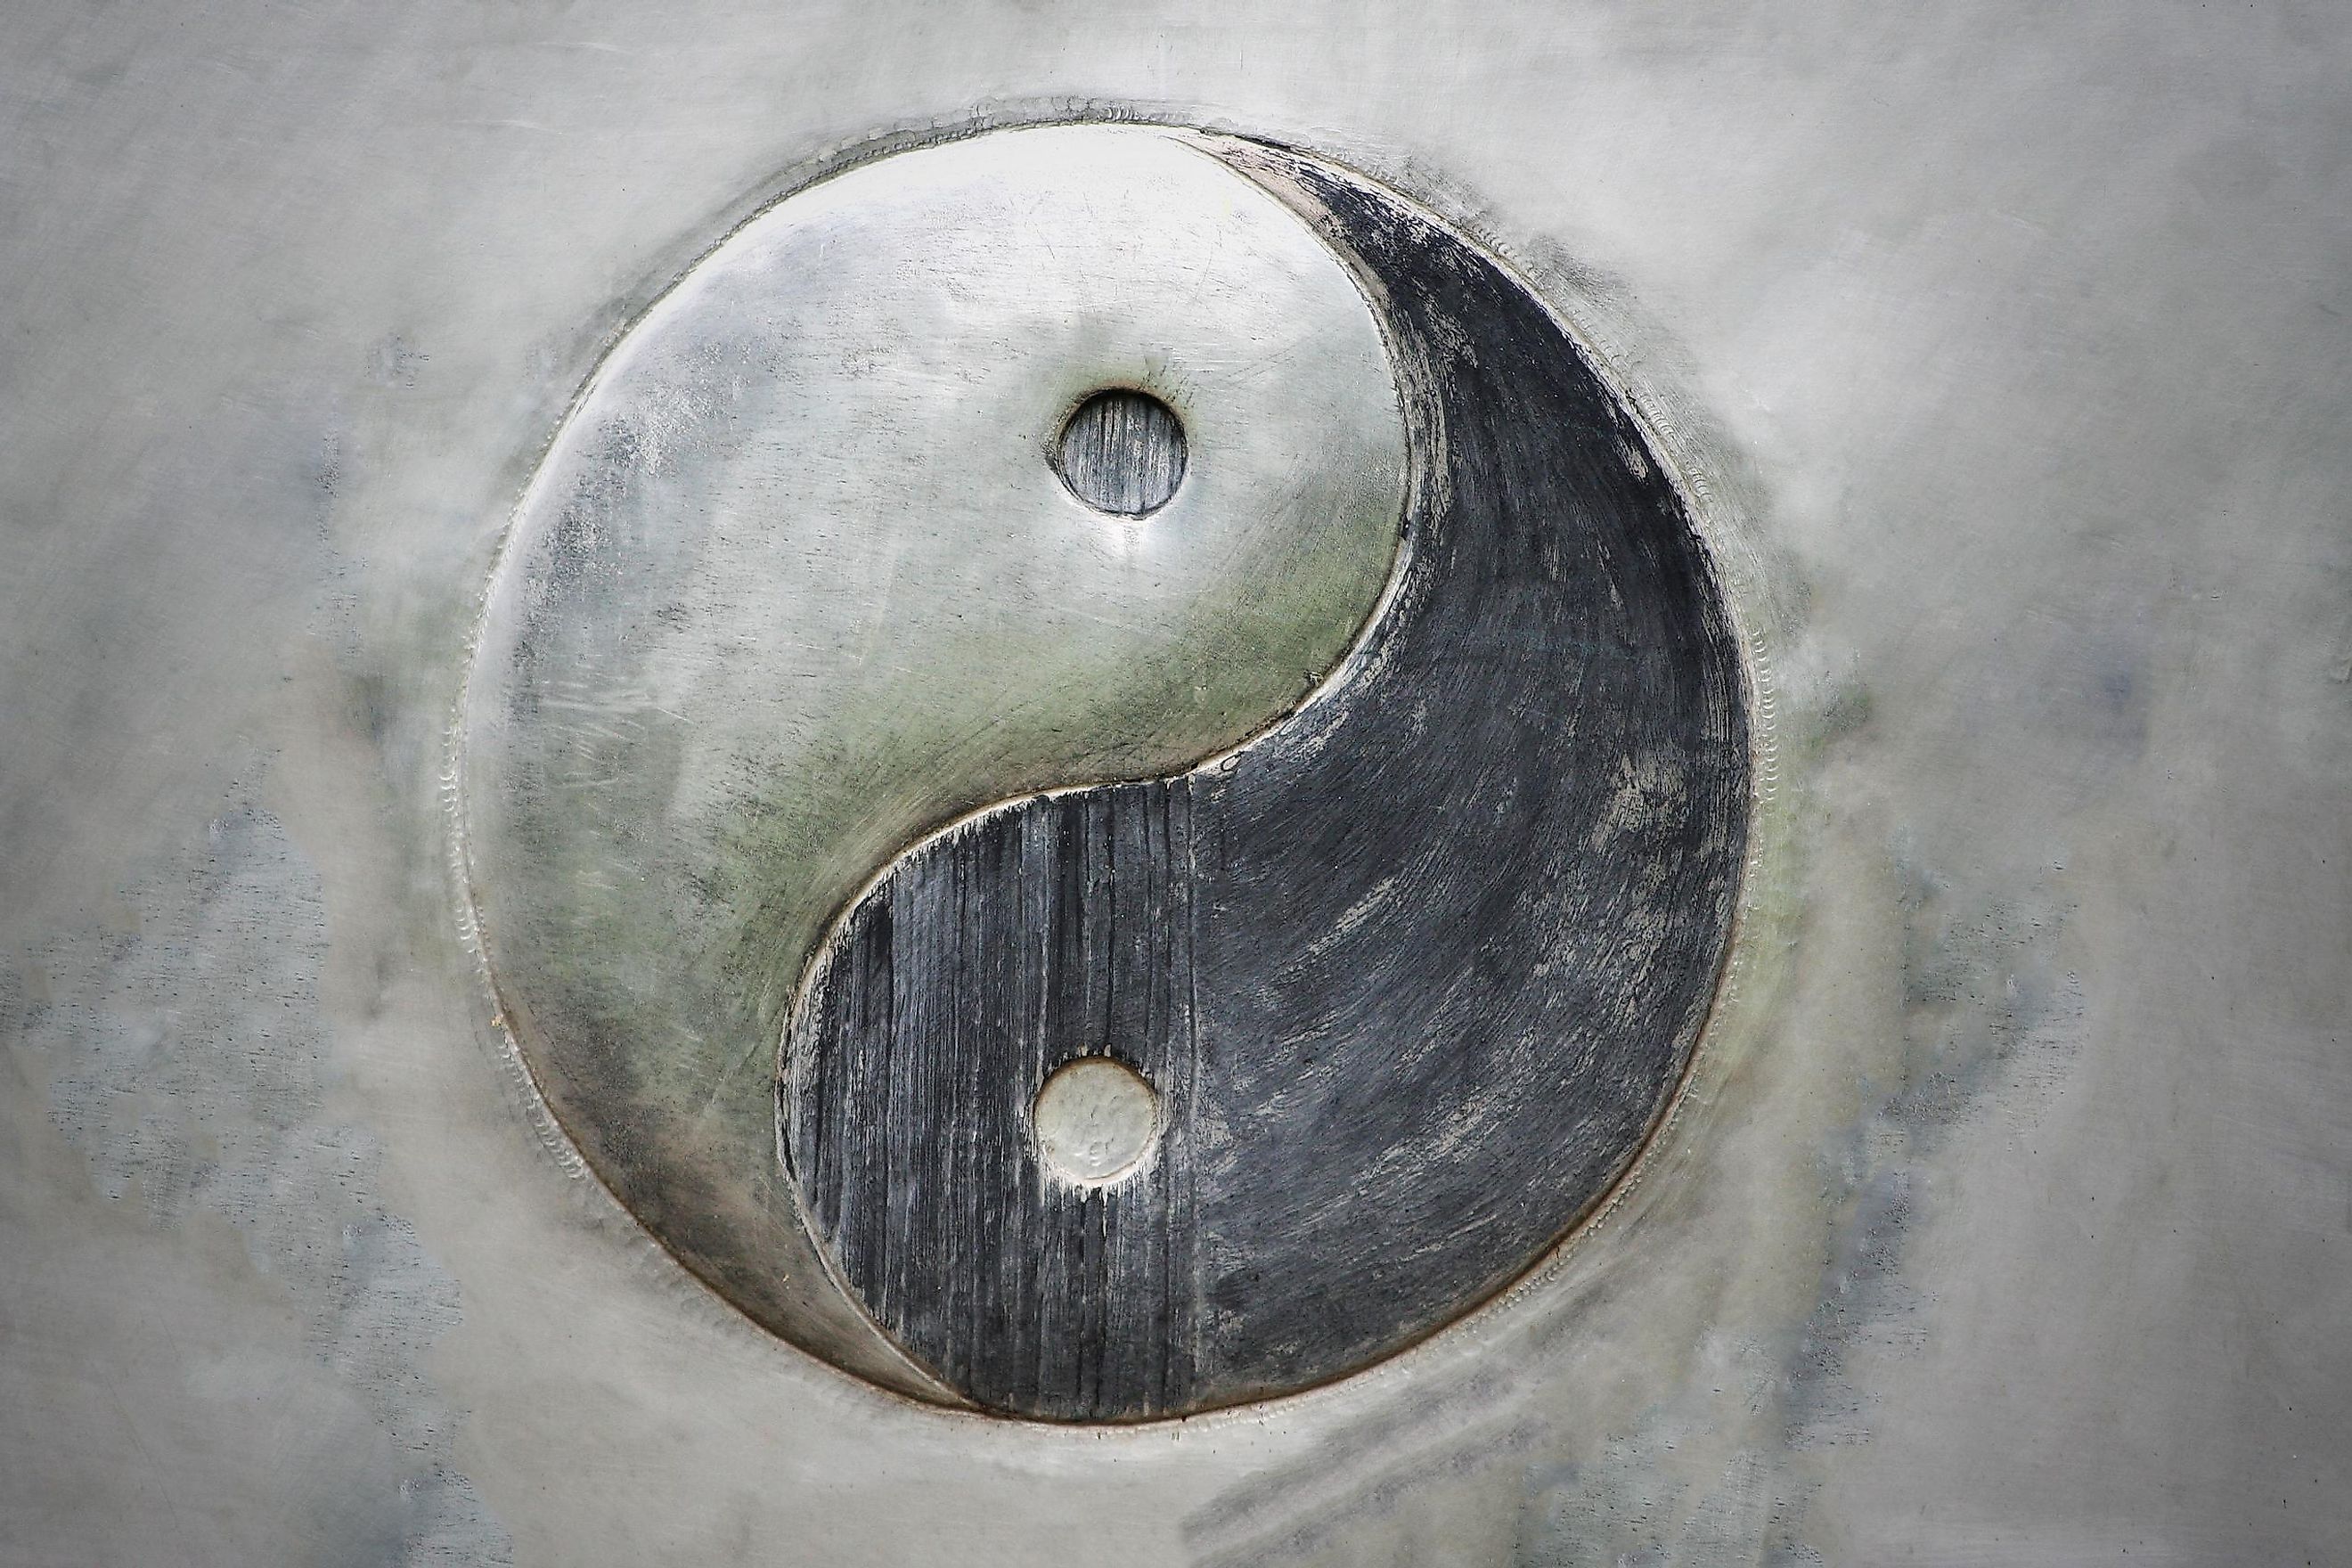 yin yang meaning